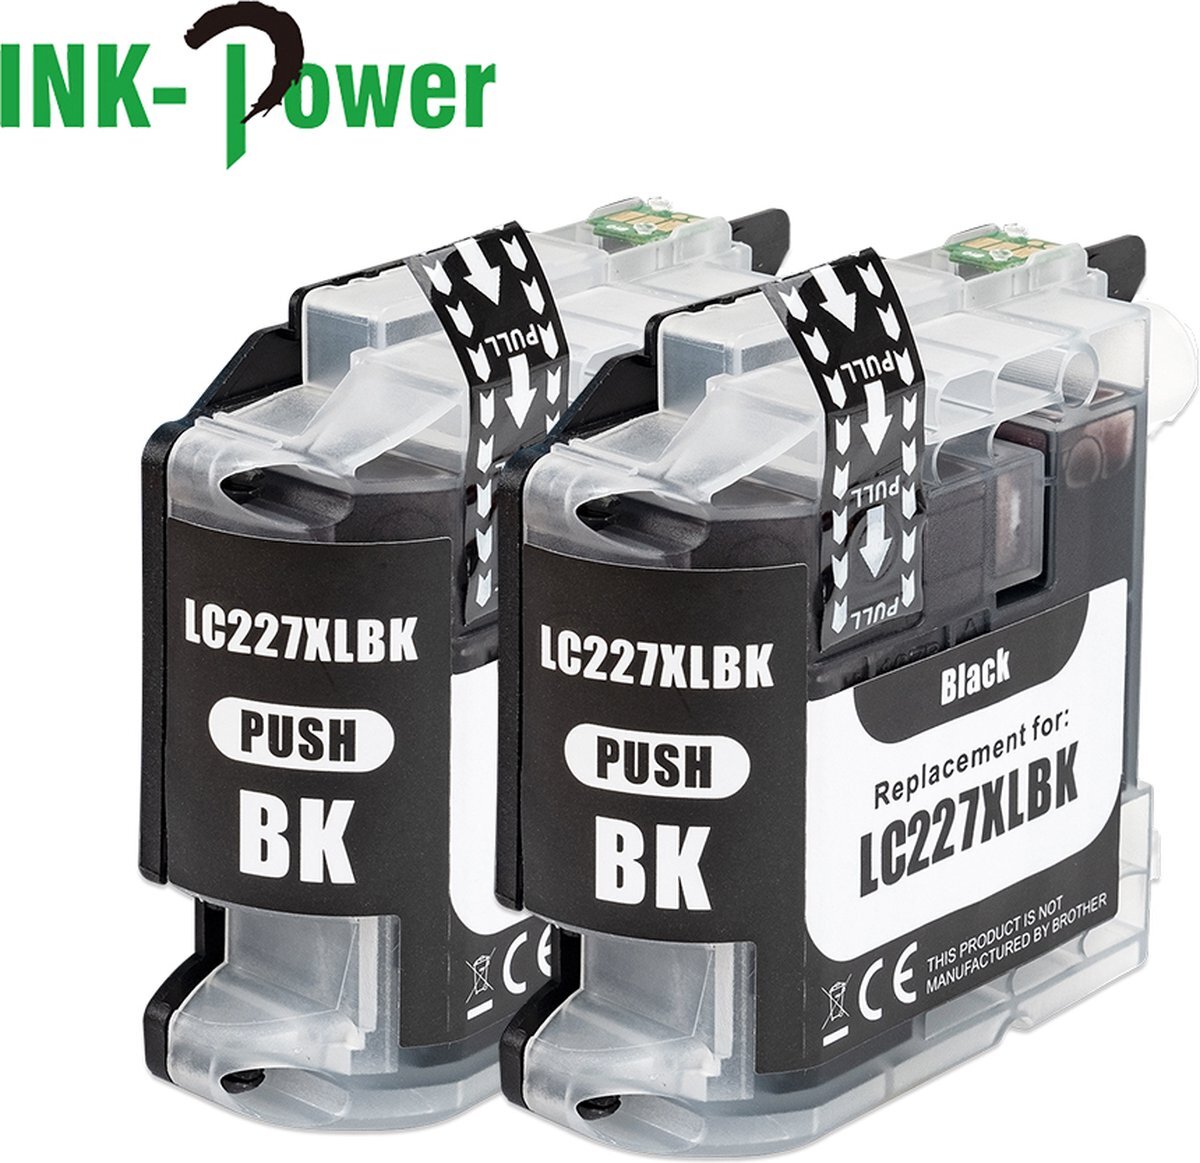 Ink Power Inktcartridges voor Brother LC225 / LC227 | Dualpack van 2 zwarte cartridges voor DCP-J4120DW - MFC-J4420DW - MFC-J4425DW - MFC-J4620DW - MFC-J4625DW